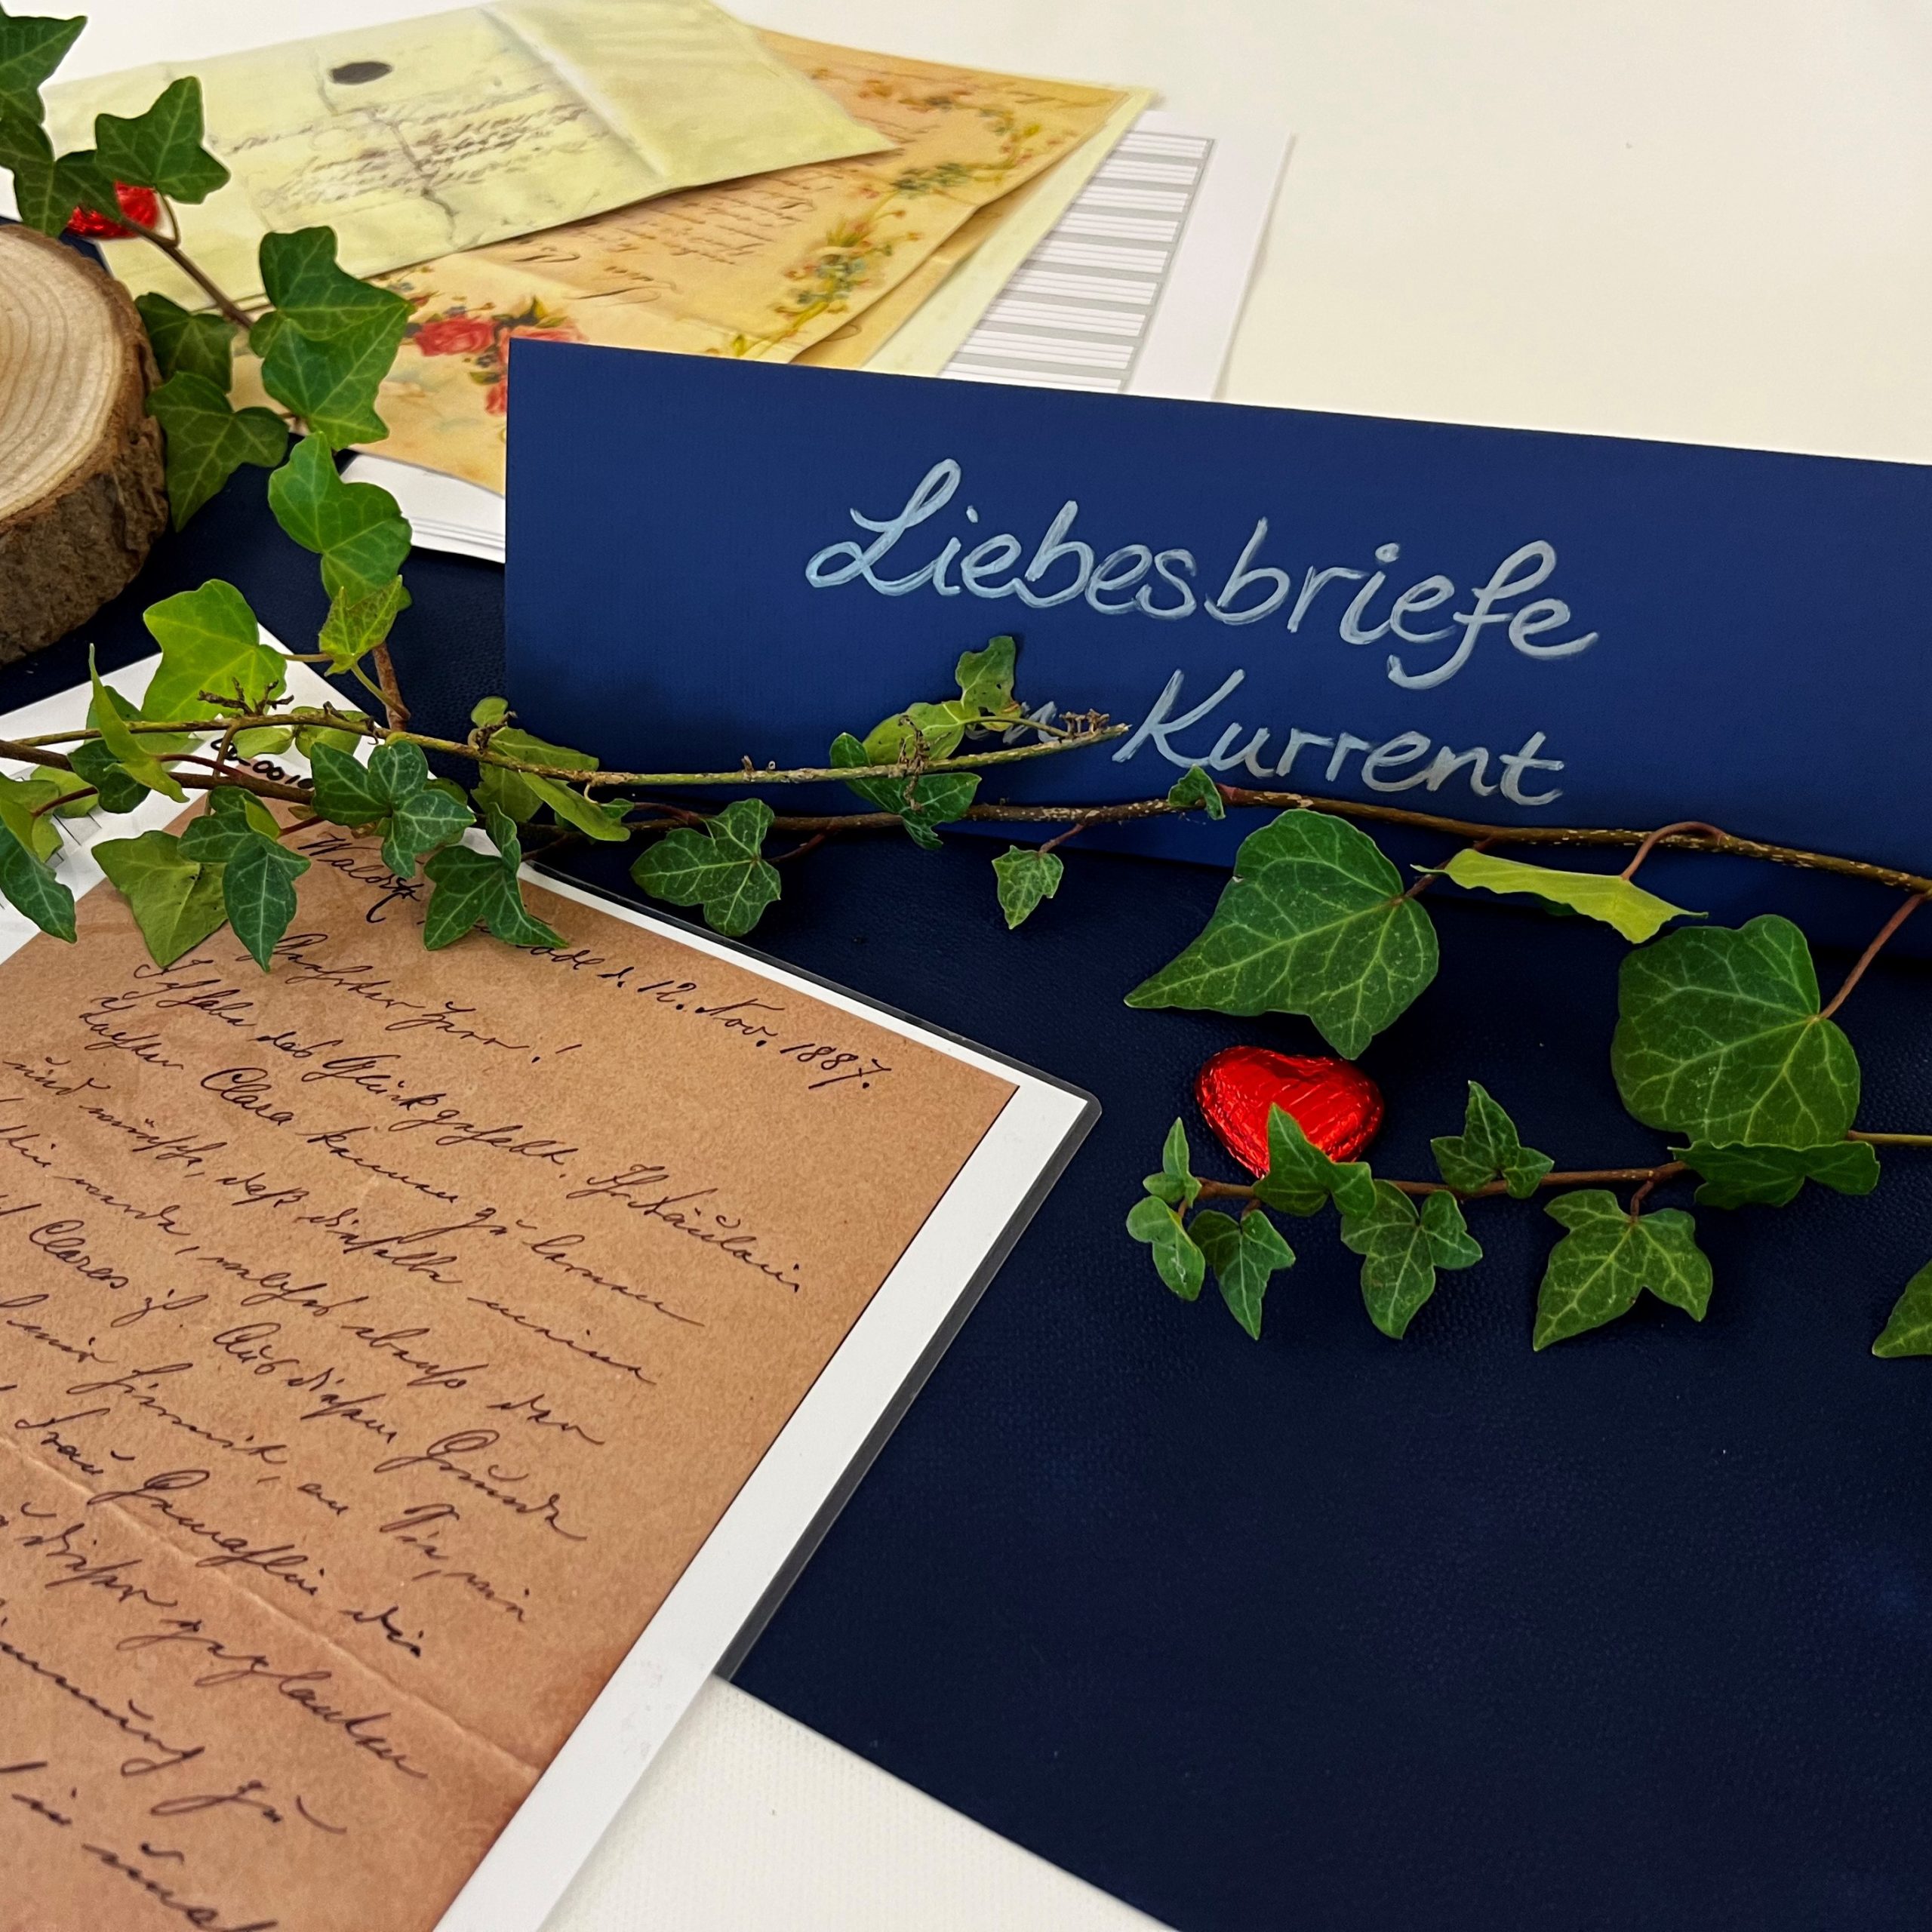 Der Thementisch zu Liebesbriefen in Kurrent mit rotem Schokoladenherz, umgeben von Efeu und Liebesbriefen